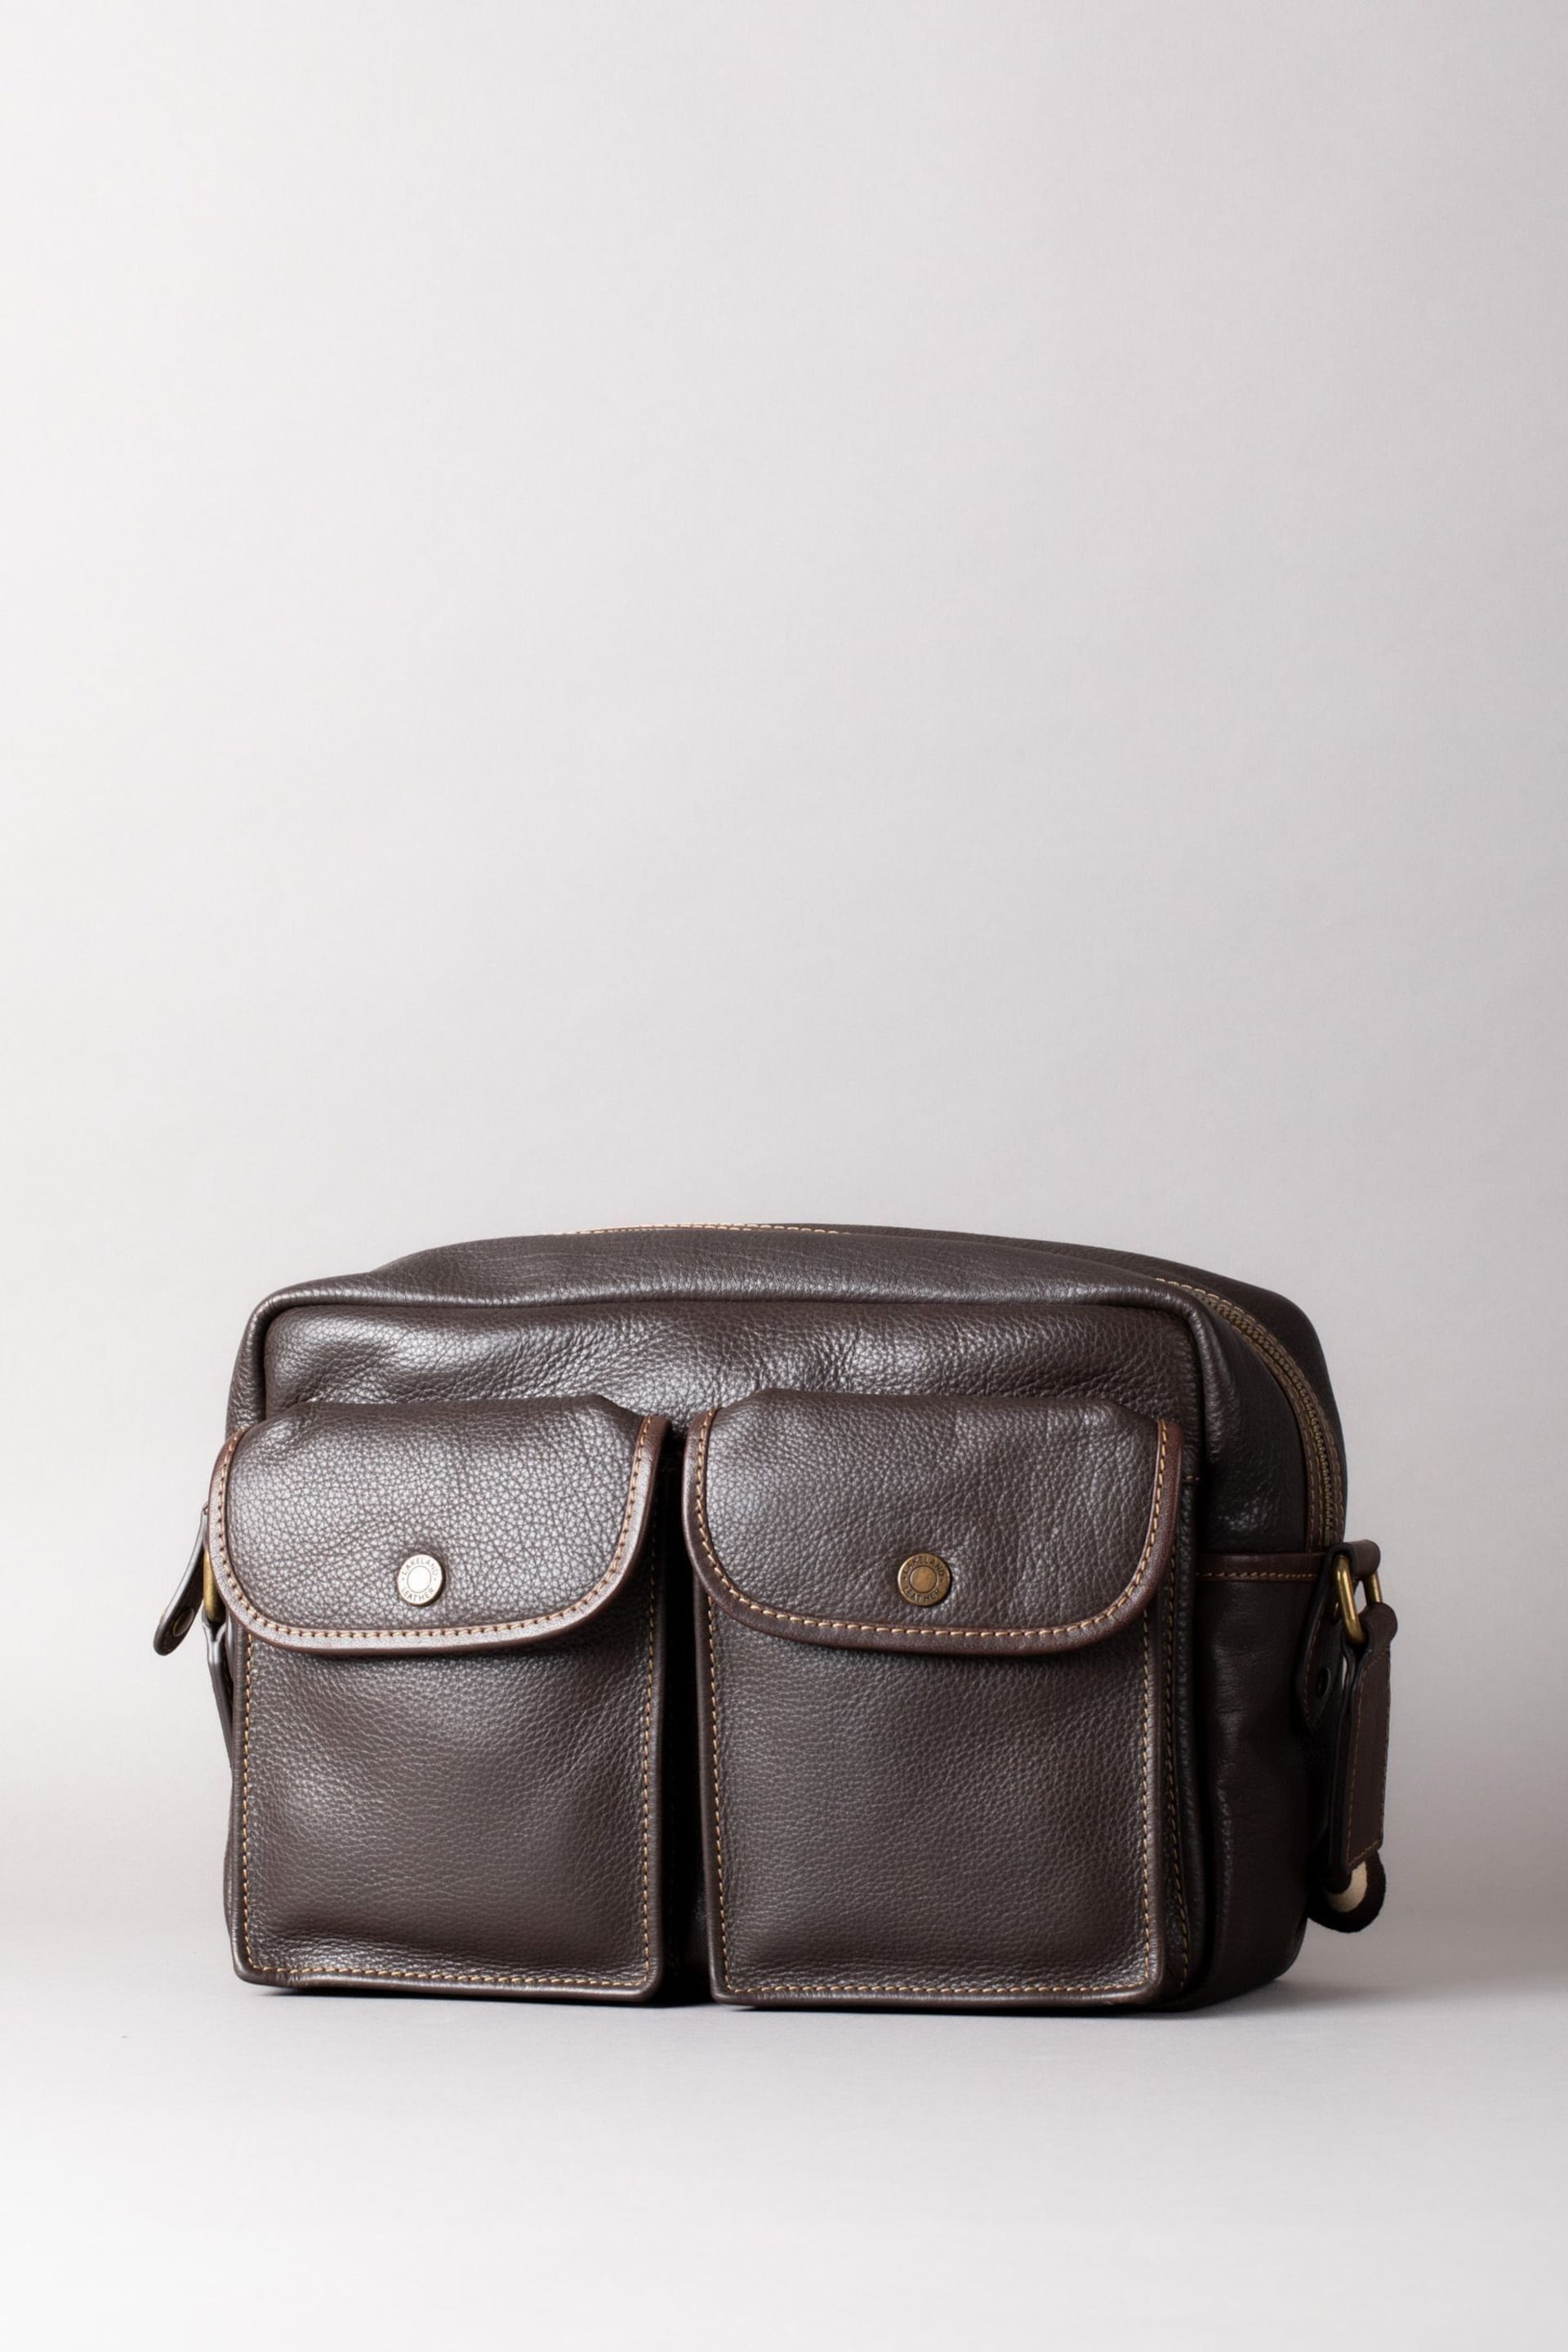 Lakeland Leather Kelsick Leather Messenger Brown Bag - Image 1 of 9